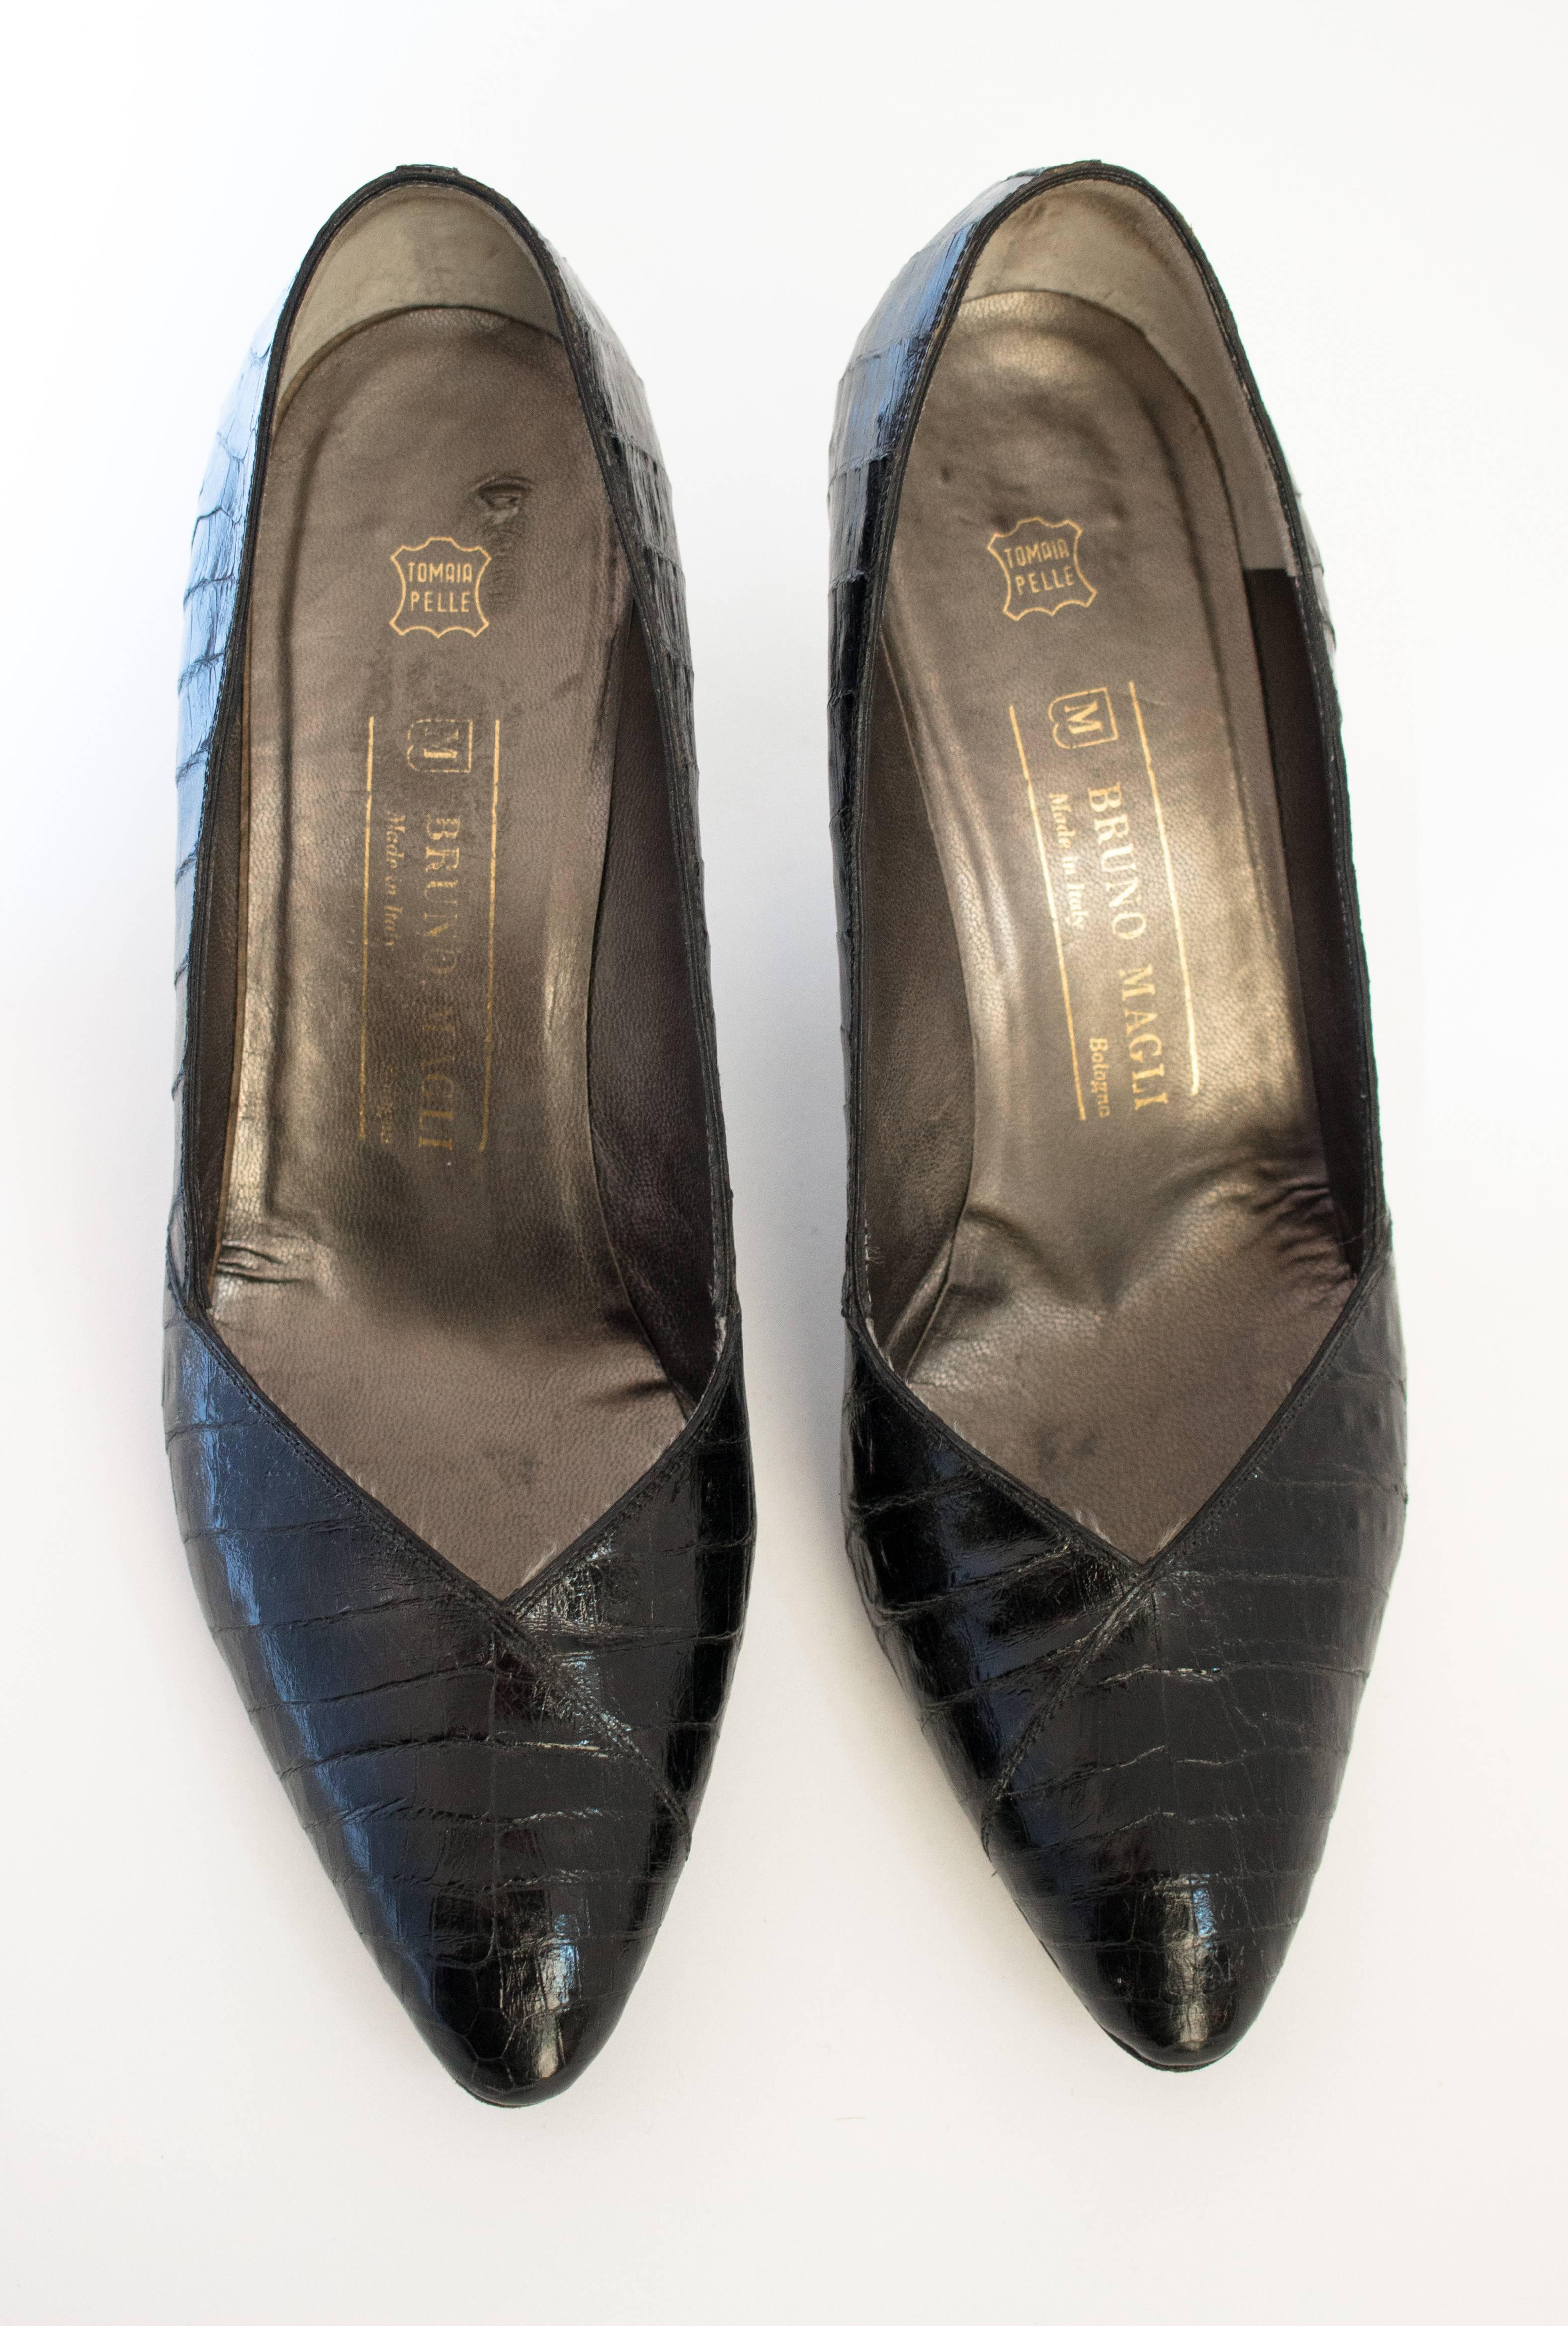 Talons en alligator des années 1950 de Bruno Magli. Détail de croisement sur le dessus de la chaussure. Semelle en cuir. Fabriquées en Italie. Taille 10 B.

Paume du pied : 3